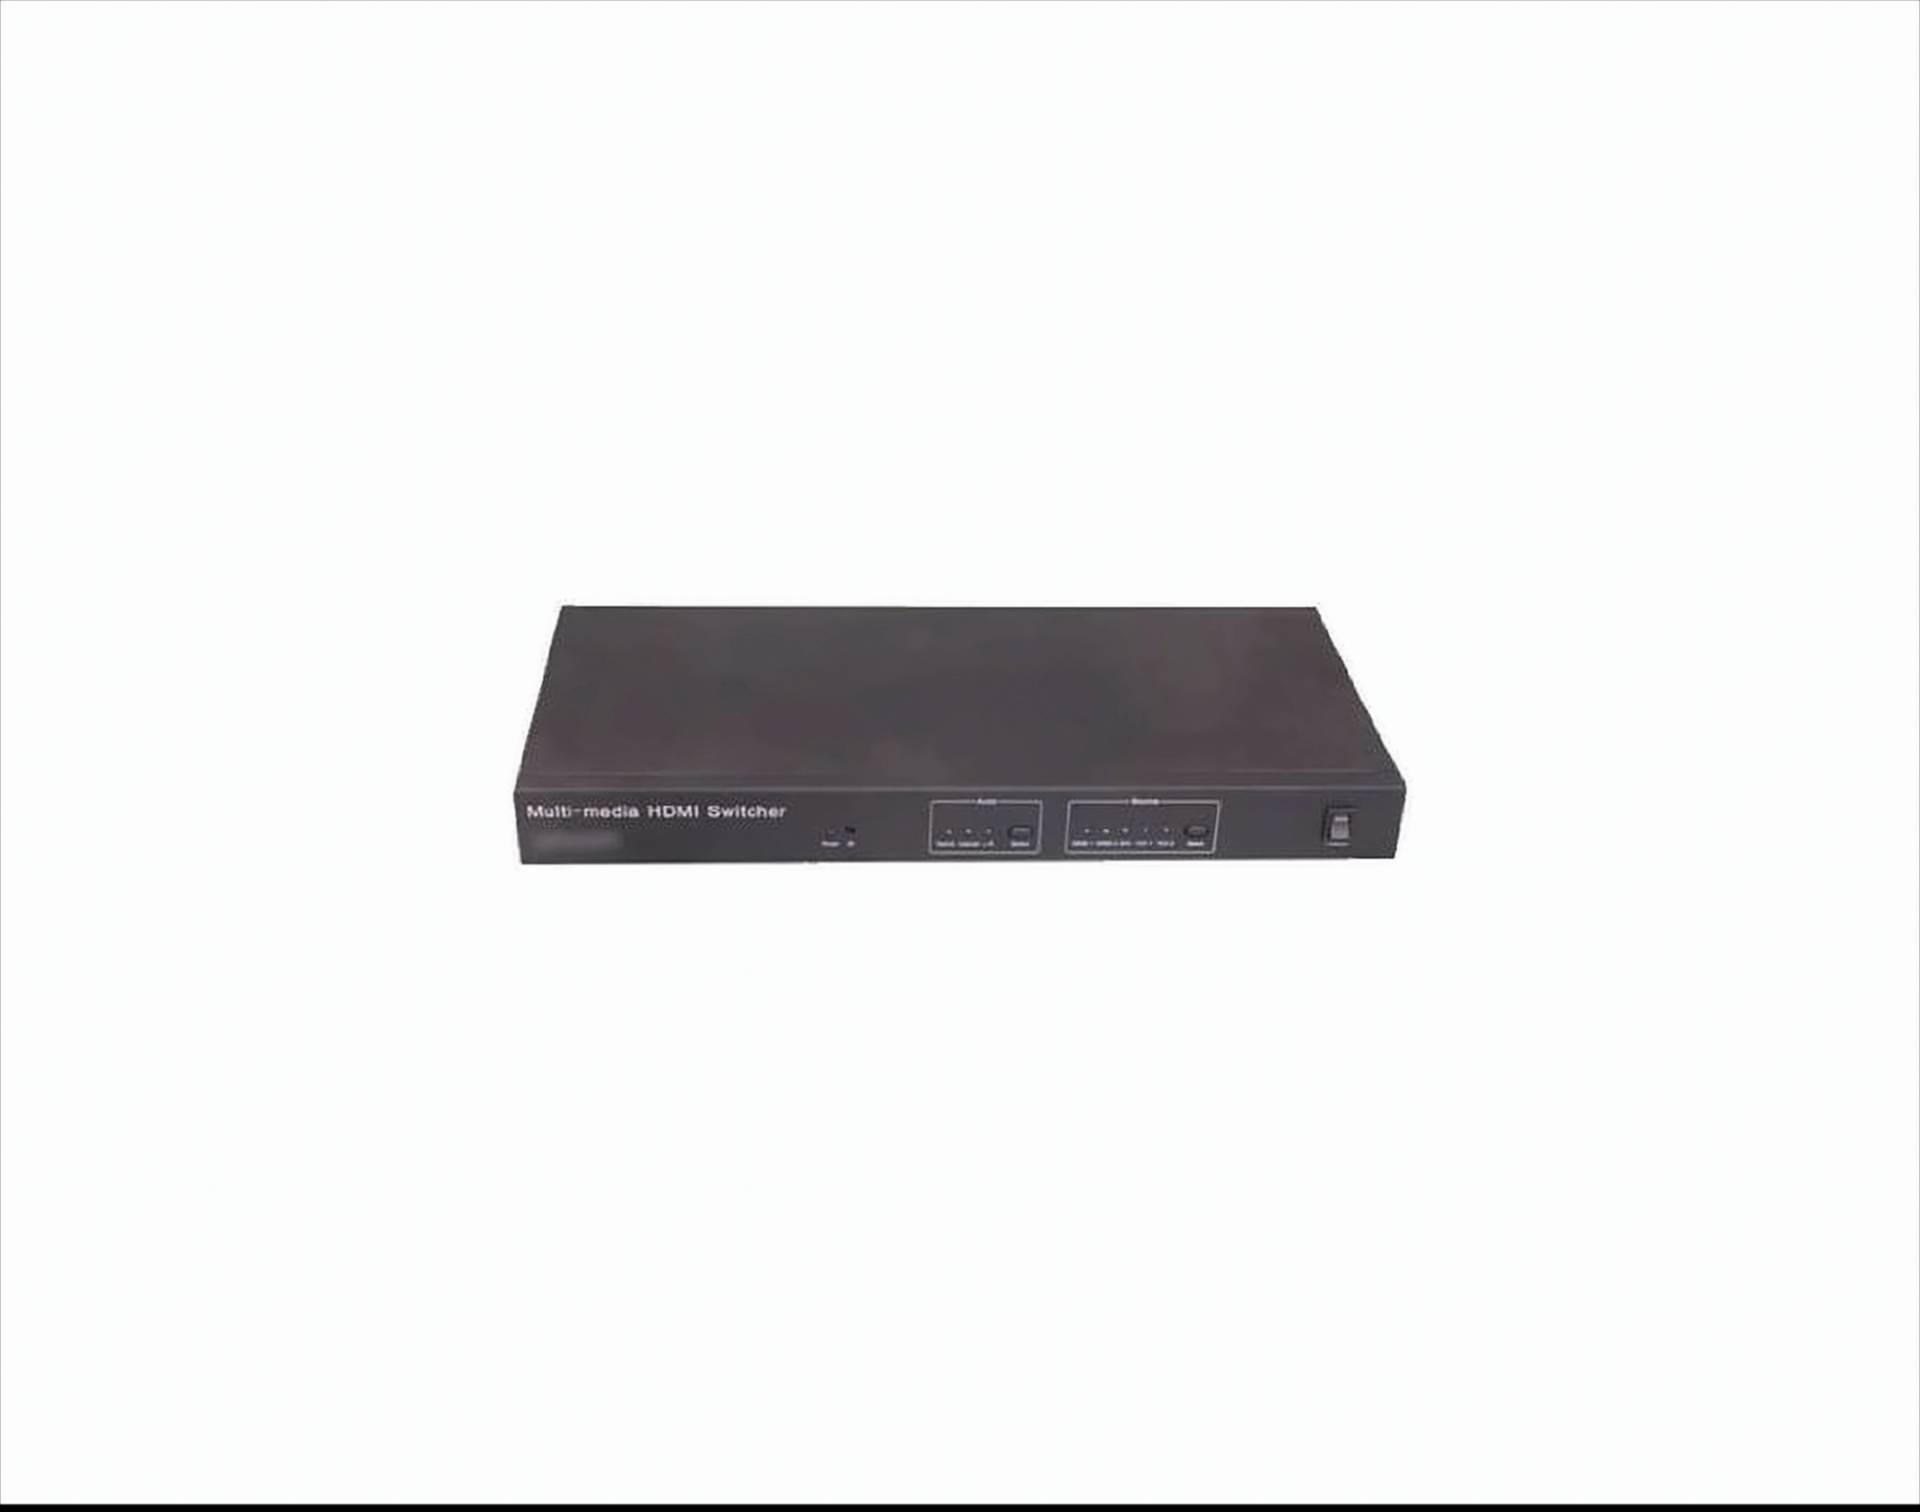 Ligawo 6518981 2x Component/ YPbPr + DVI + 2x HDMI zu HDMI + SPDIF + Coax + R/L - Konverter Switch 5x1 von Ligawo